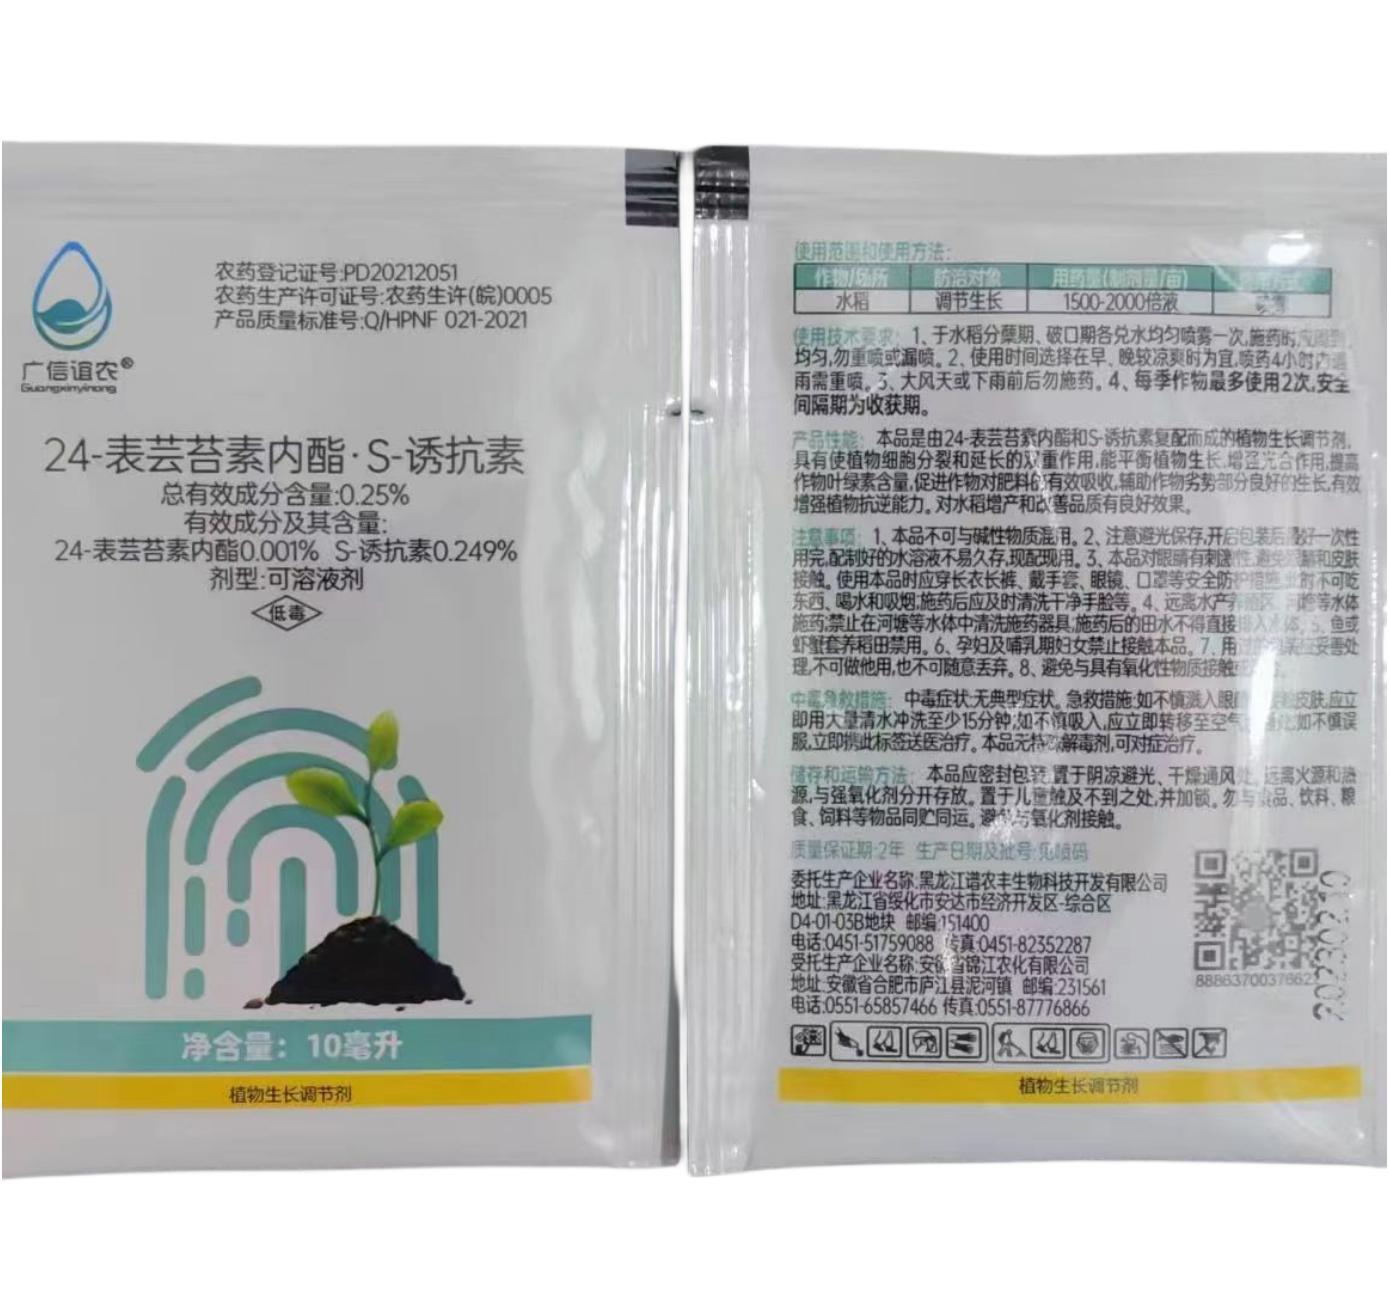 广信谊农 0.25%24-表芸苔素内酯·s-诱抗素 可溶液剂